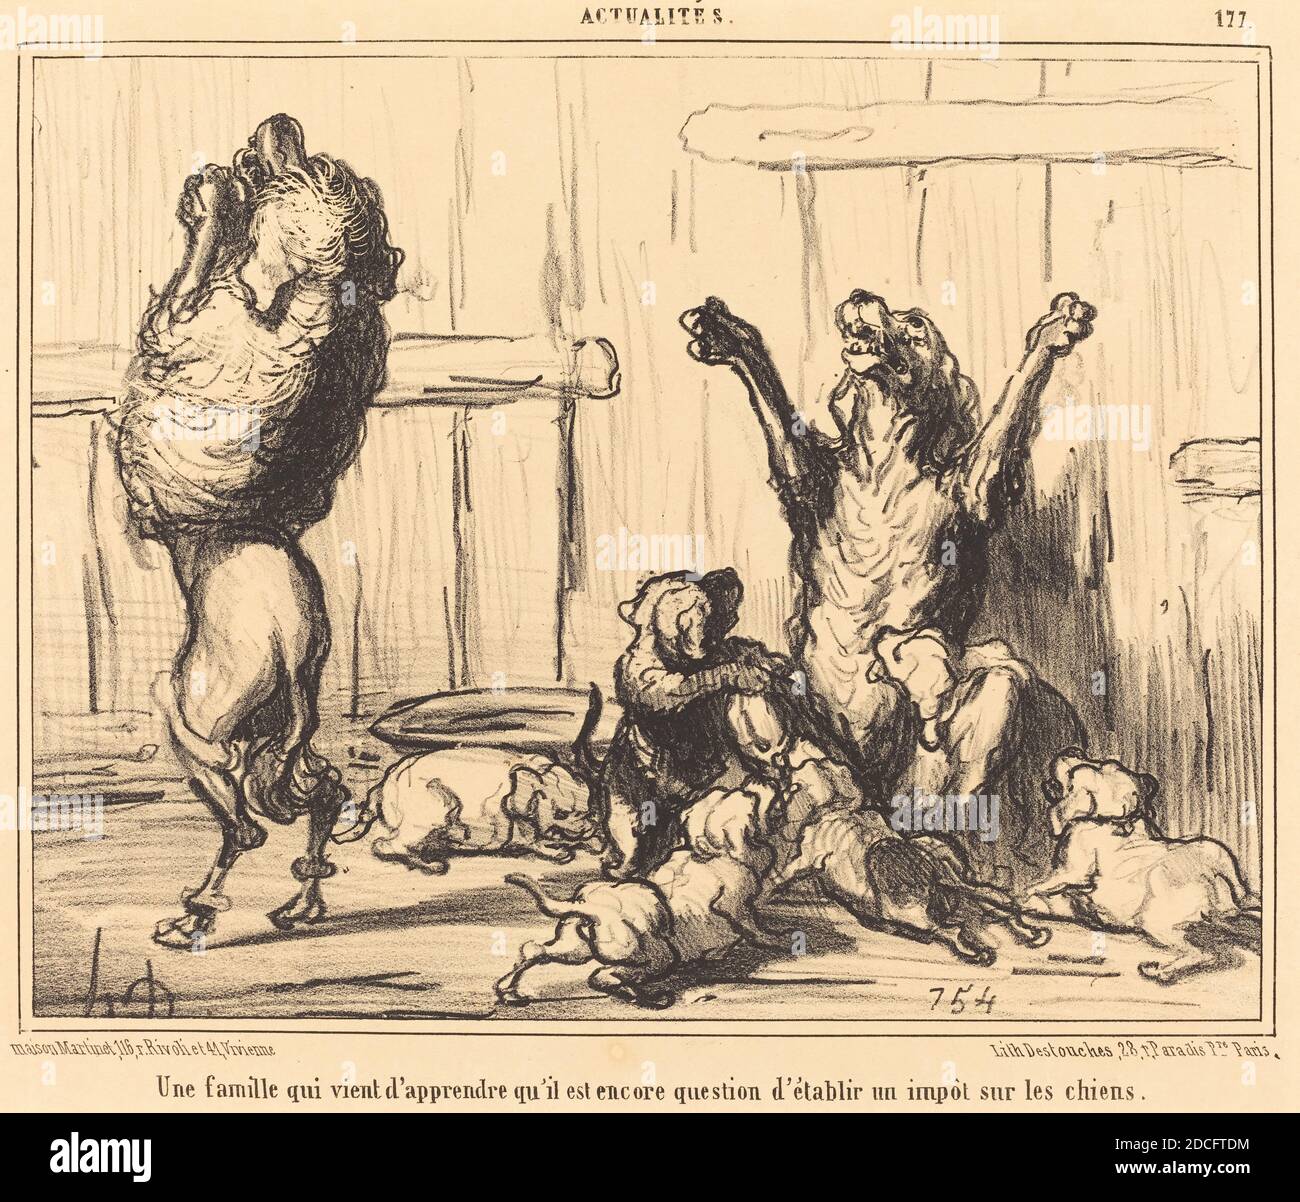 Honoré Daumier, (artist), French, 1808 - 1879, Une Famille qui vient d'apprendre... un impot sur les chiens, Actualités, (series), 1855, lithograph Stock Photo